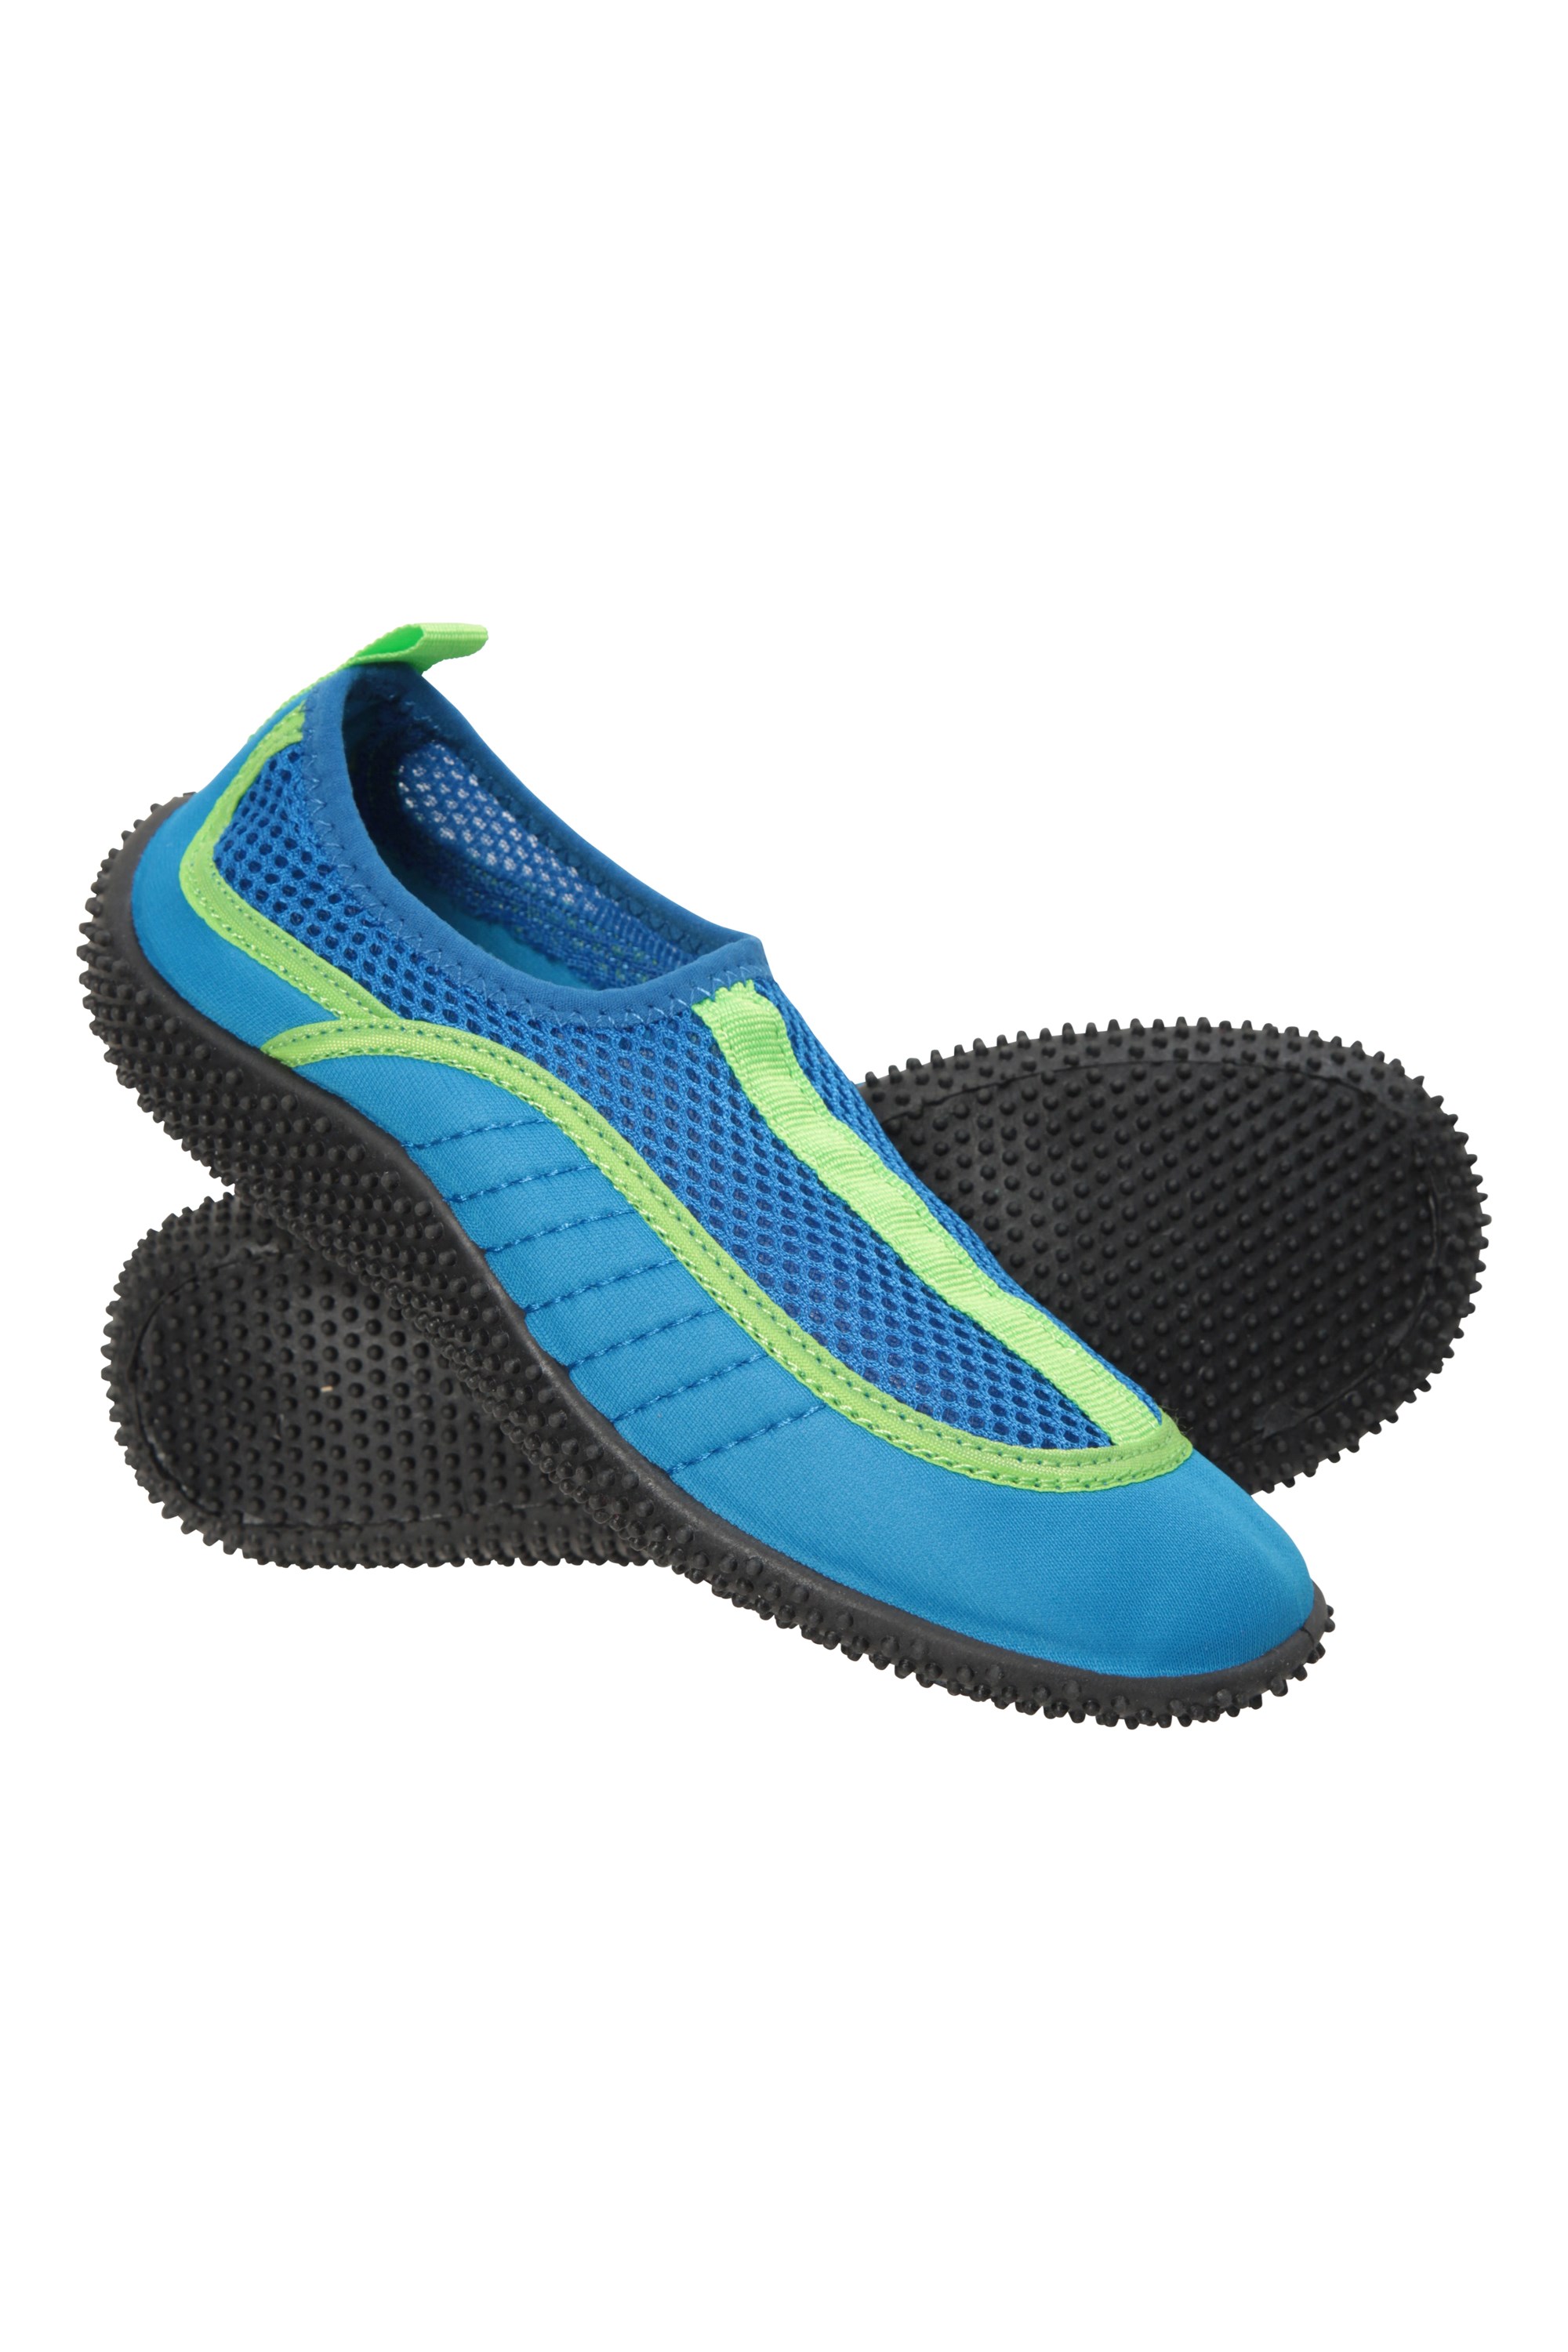 Mixed Size MOUNTAIN WAREHOUSE Kids Size 2 3 Blue Black Bermuda Aqua Water Shoes 